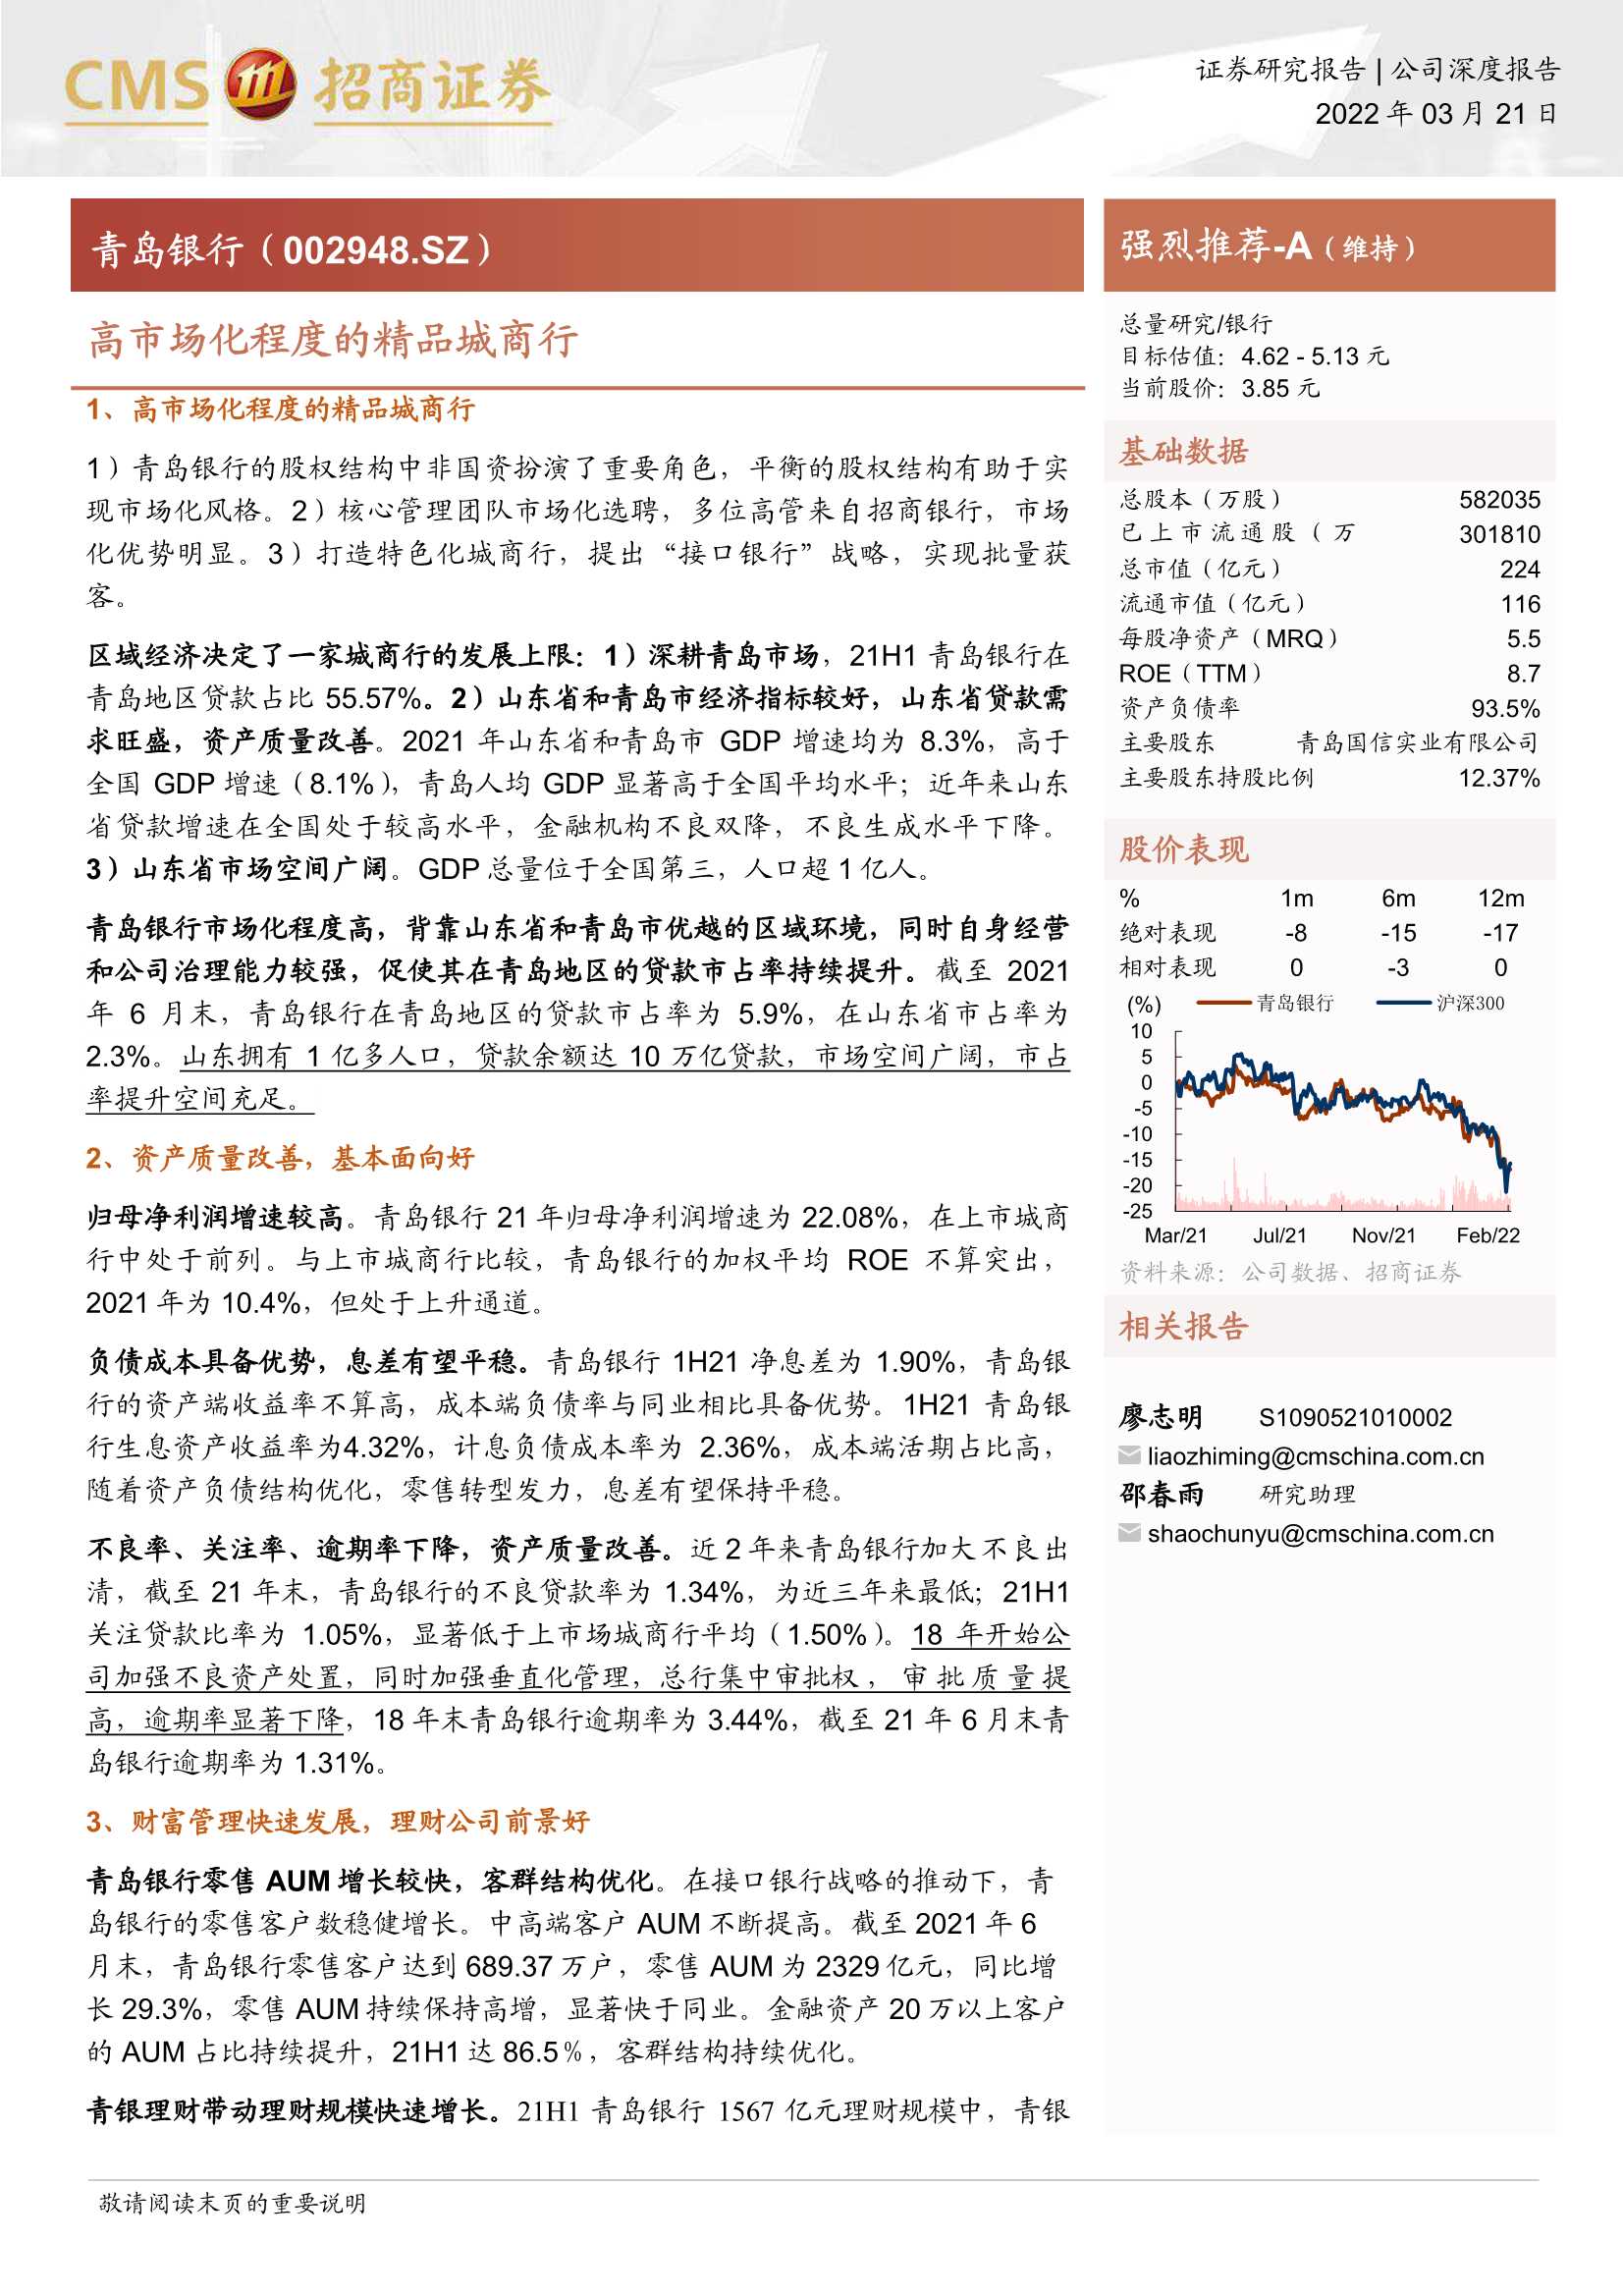 招商证券-青岛银行-002948-高市场化程度的精品城商行-20220321-27页